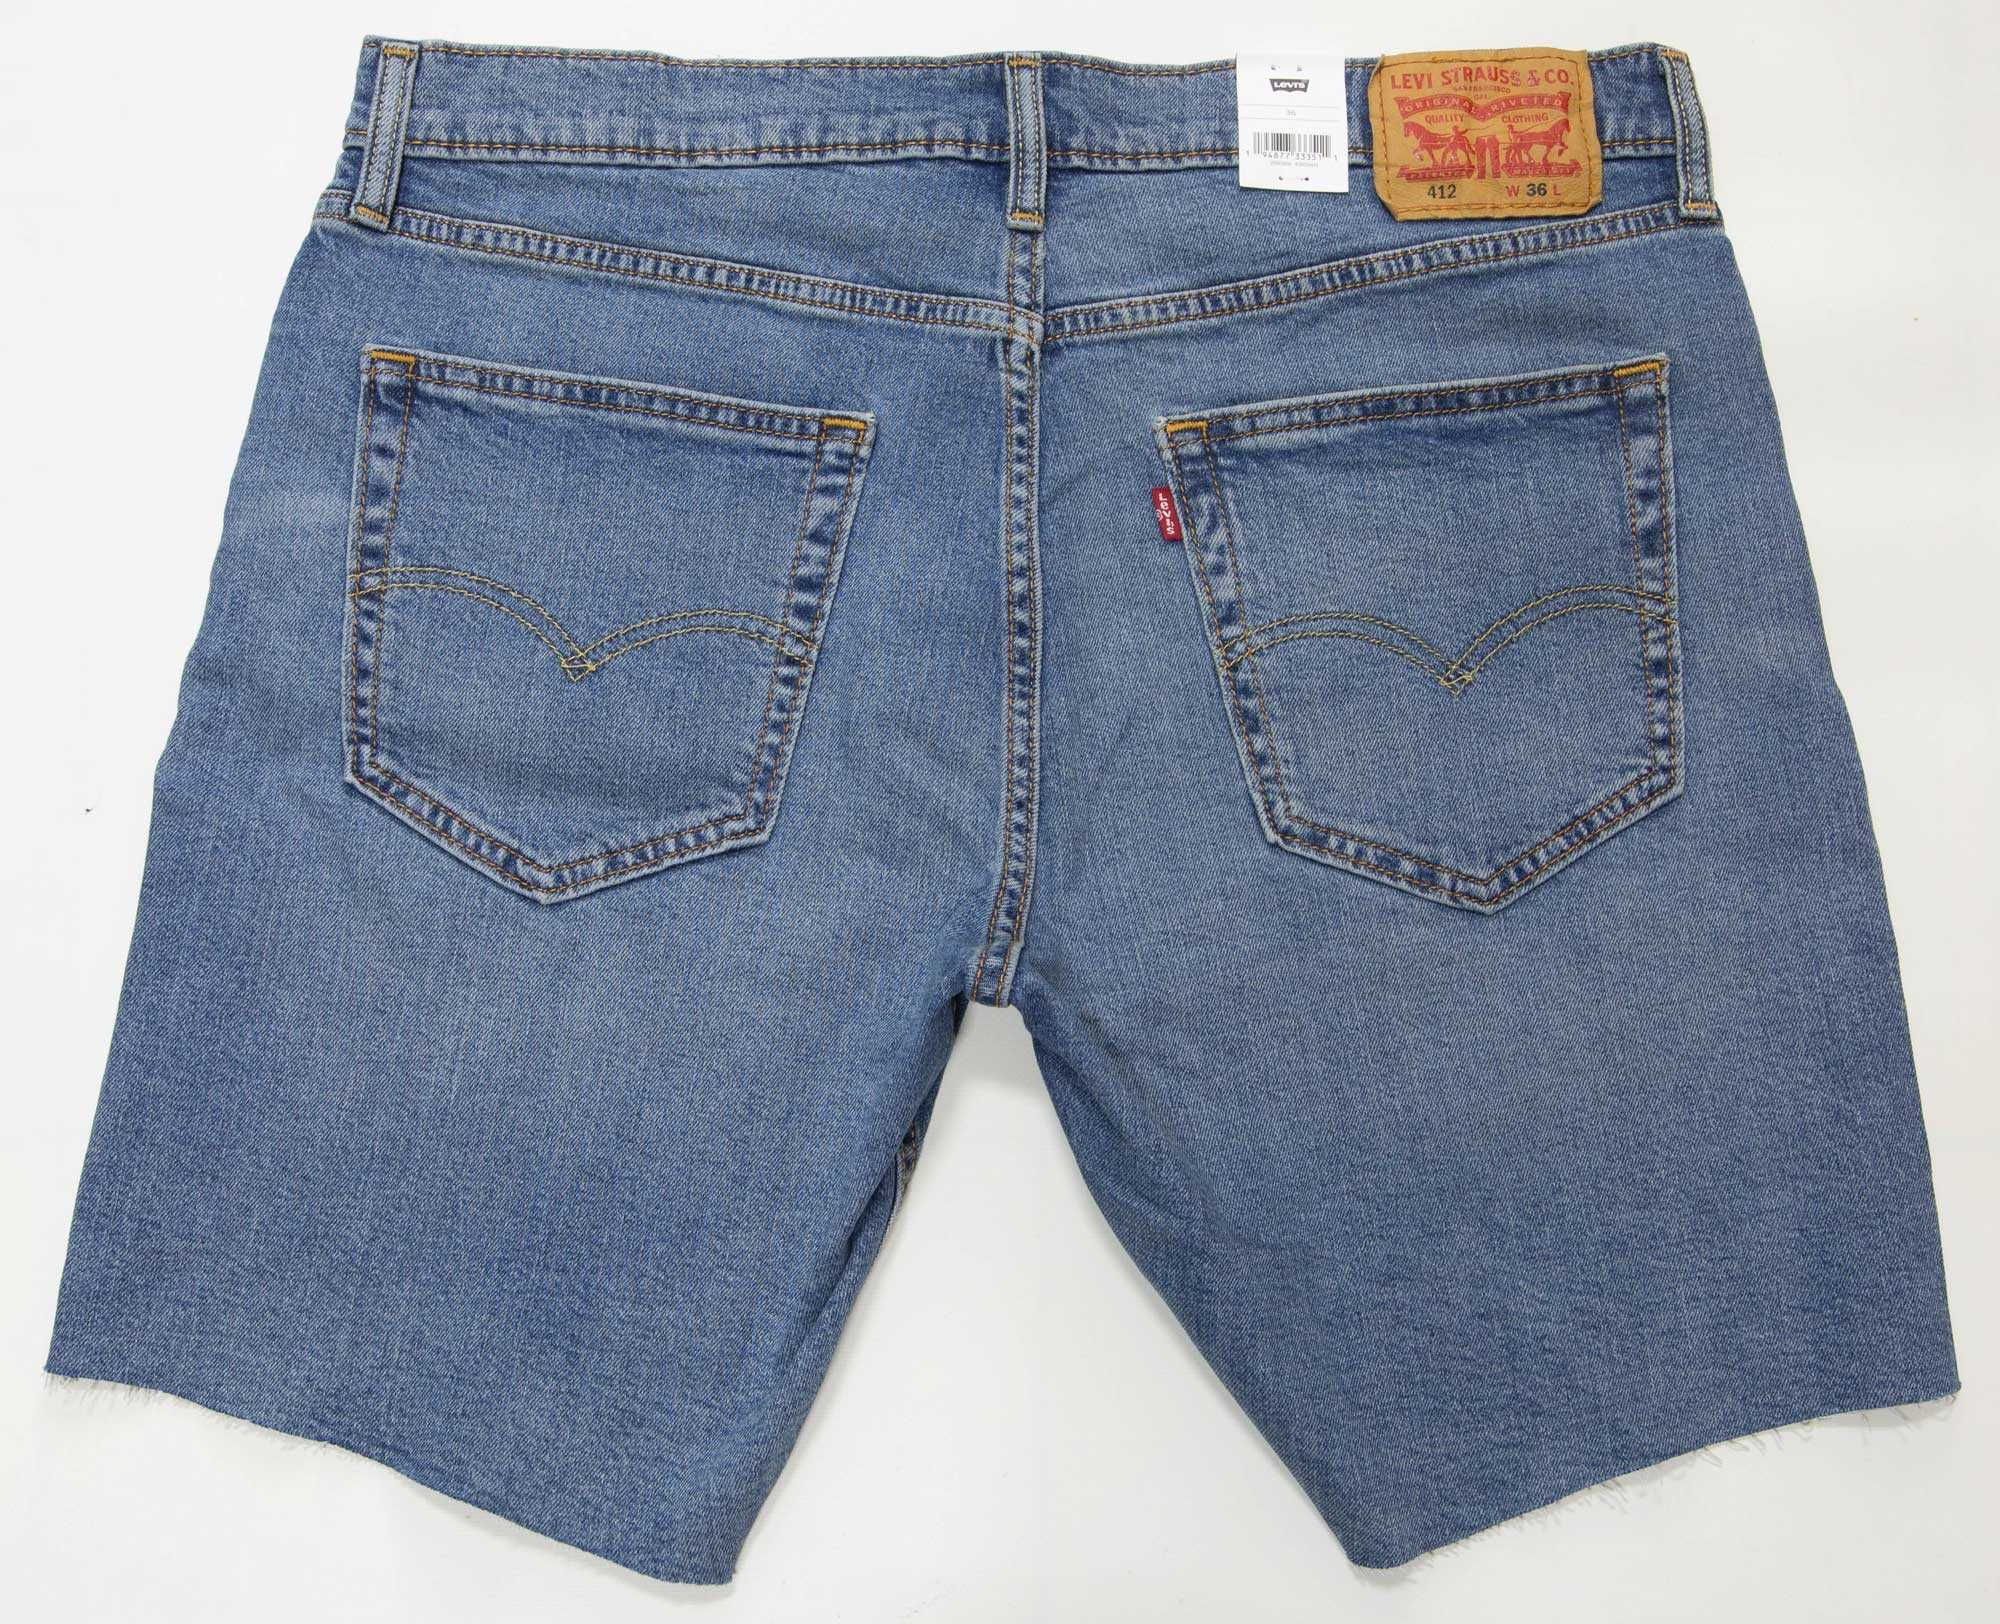 Новые мужские шорты Levis 412 стрейч, джинсы Левис из США